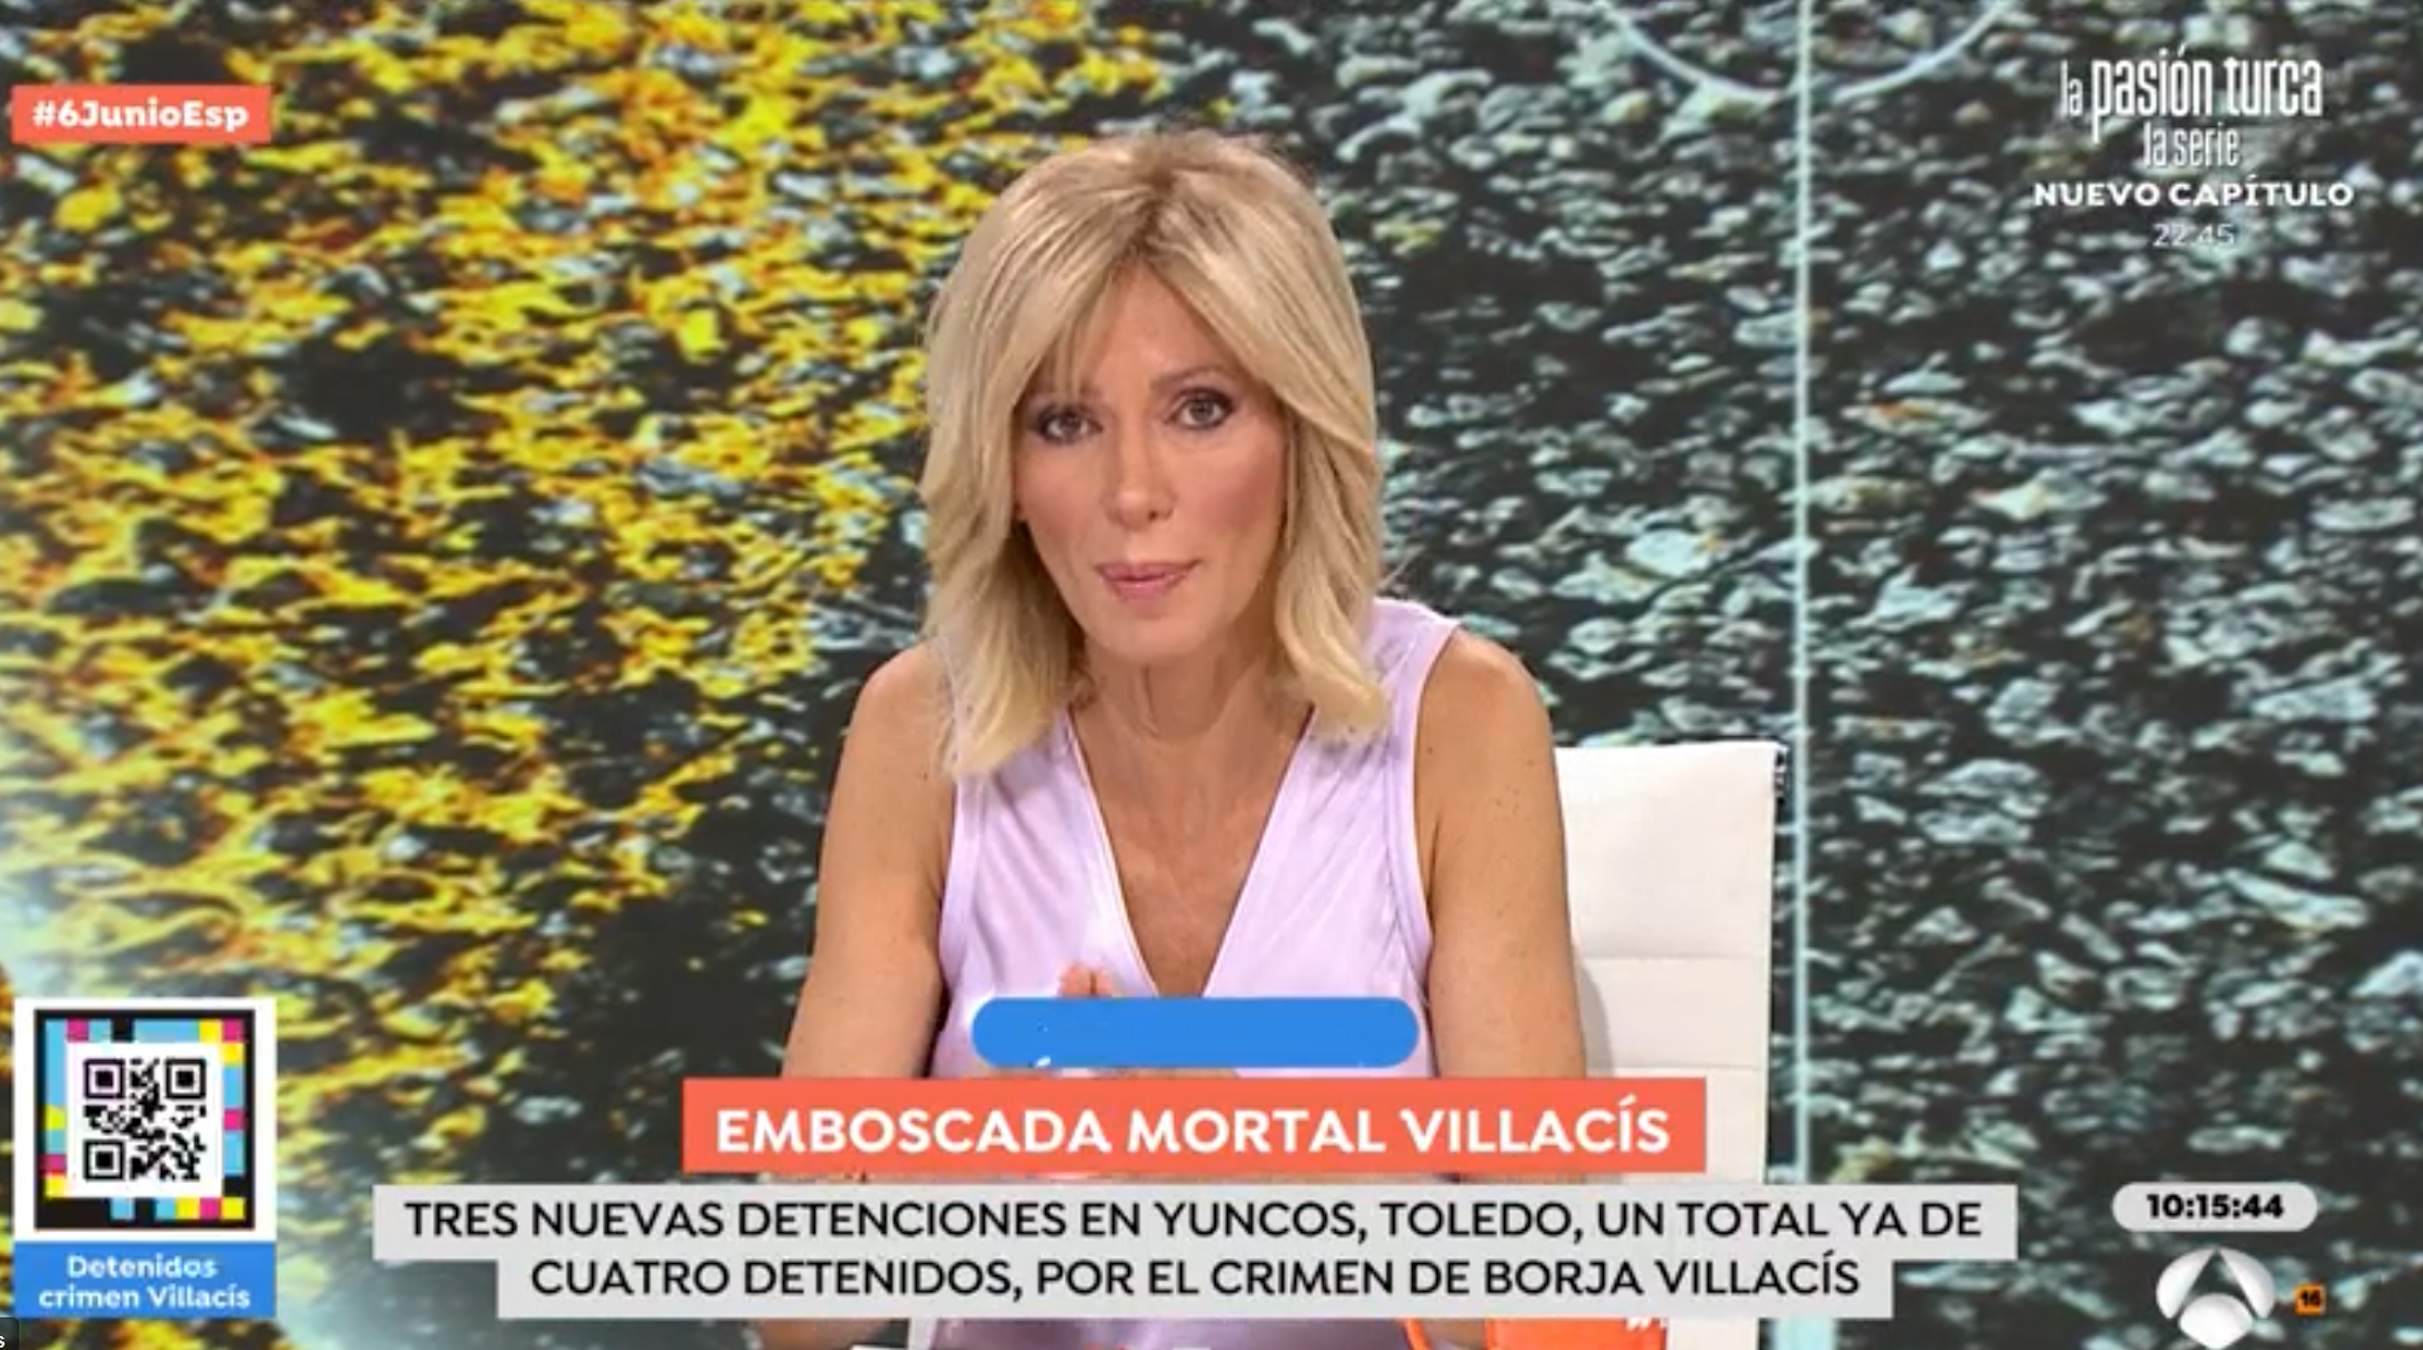 Susanna Griso destroza a la estrella de Telecinco, comentario hiriente, "yo no sé qué..."